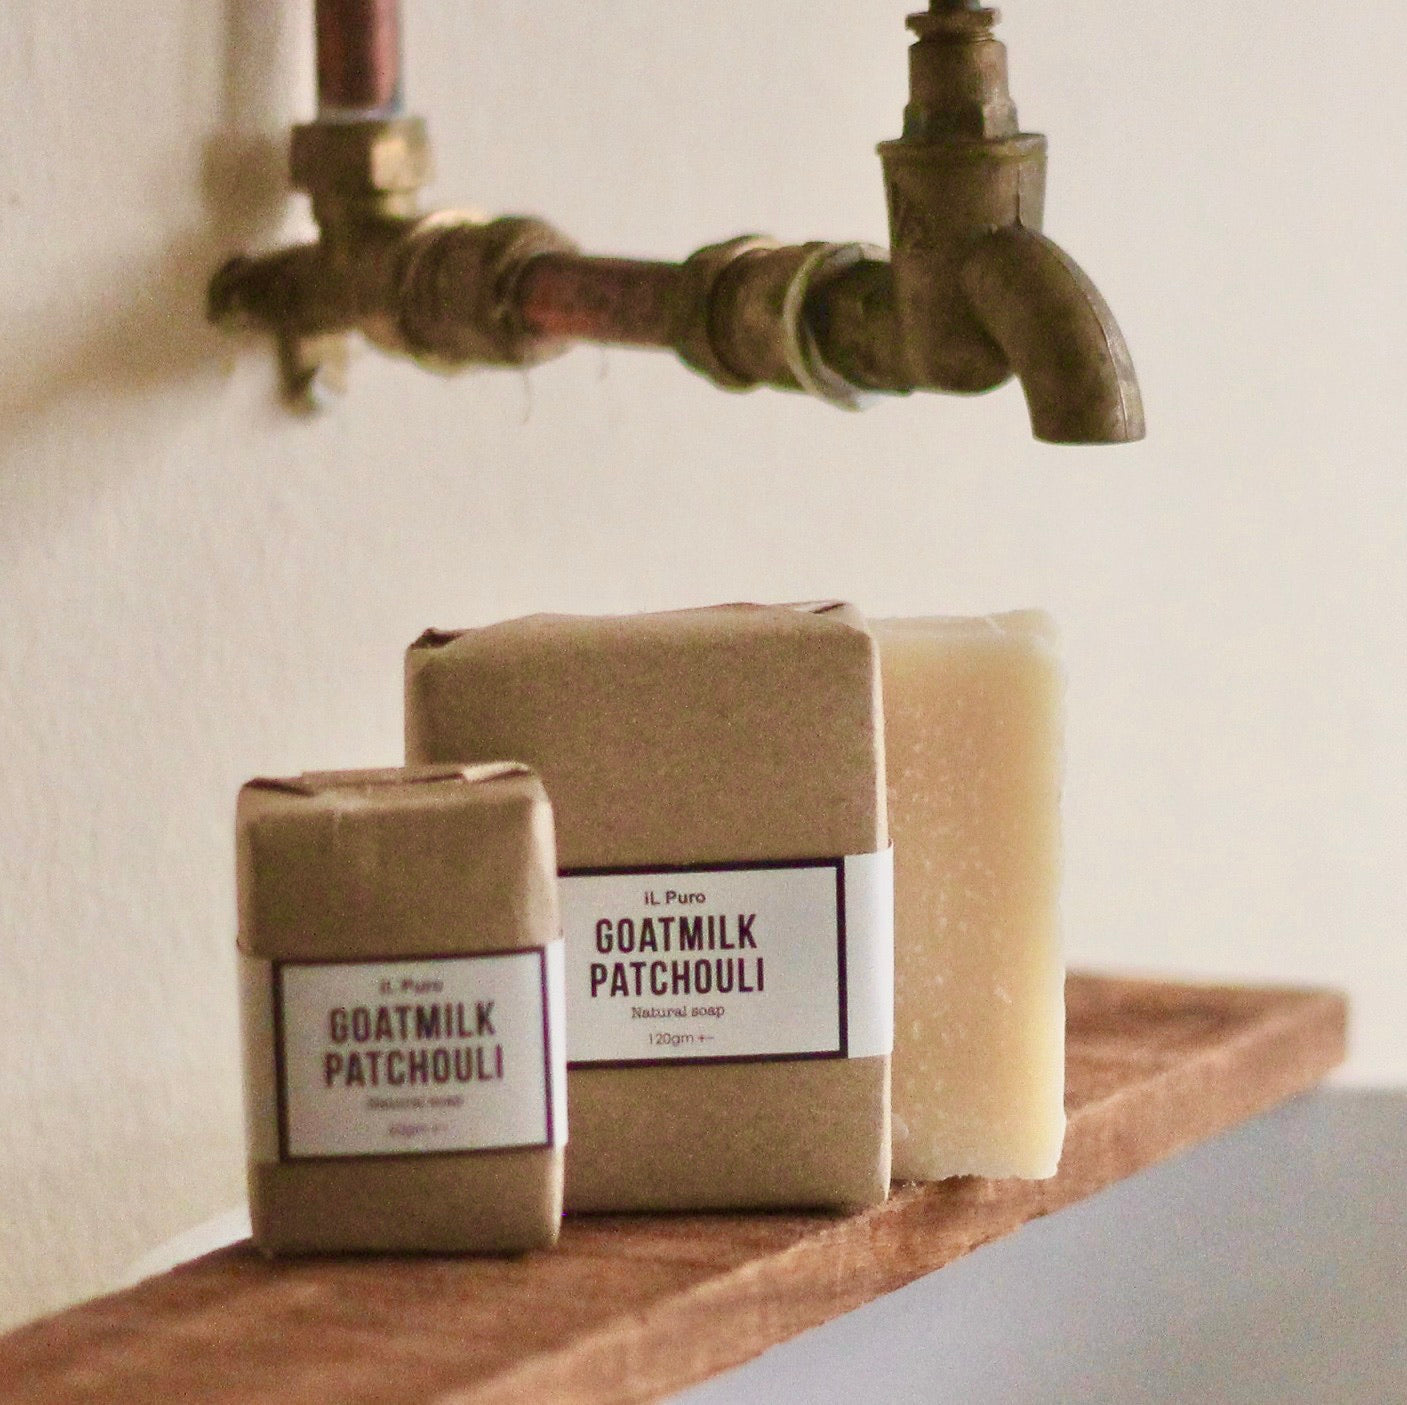 Goatmilk patchouli soap